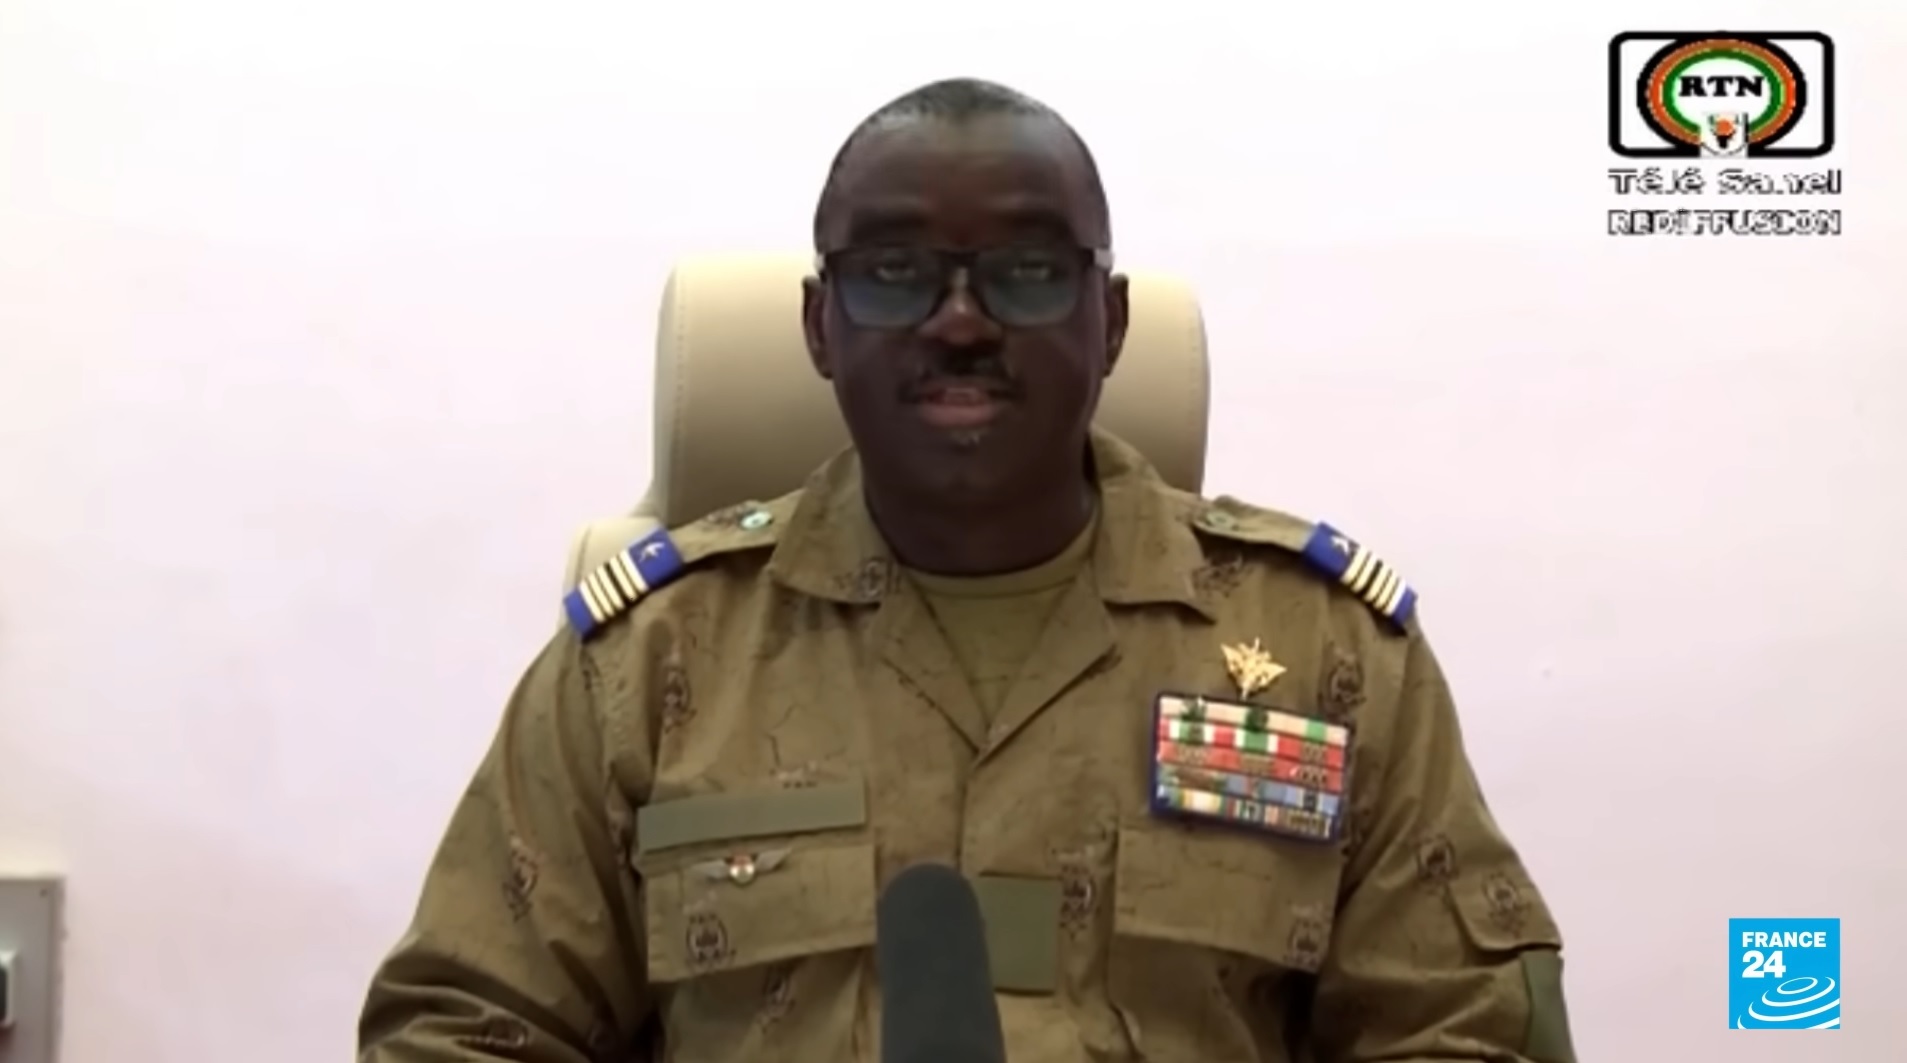 L'annonce a été faite samedi soir à la télévision par Amadou Abdramane, colonel major membre de la junte putchiste au Nige (illustration). Capture d'écran France 24